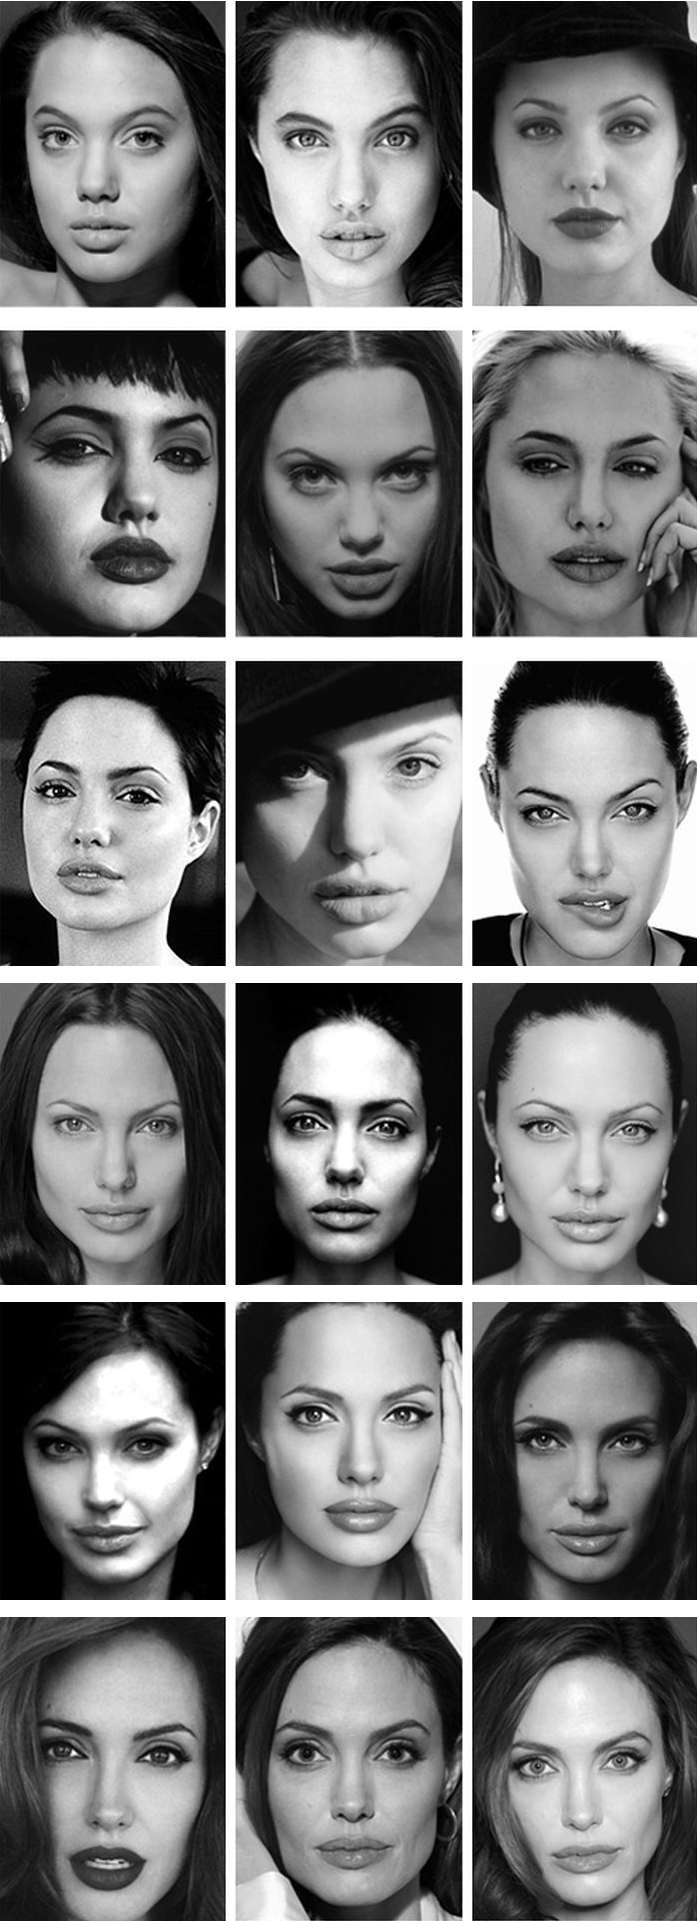 Как изменилась Анджелина Джоли с 1998 по 2012 год